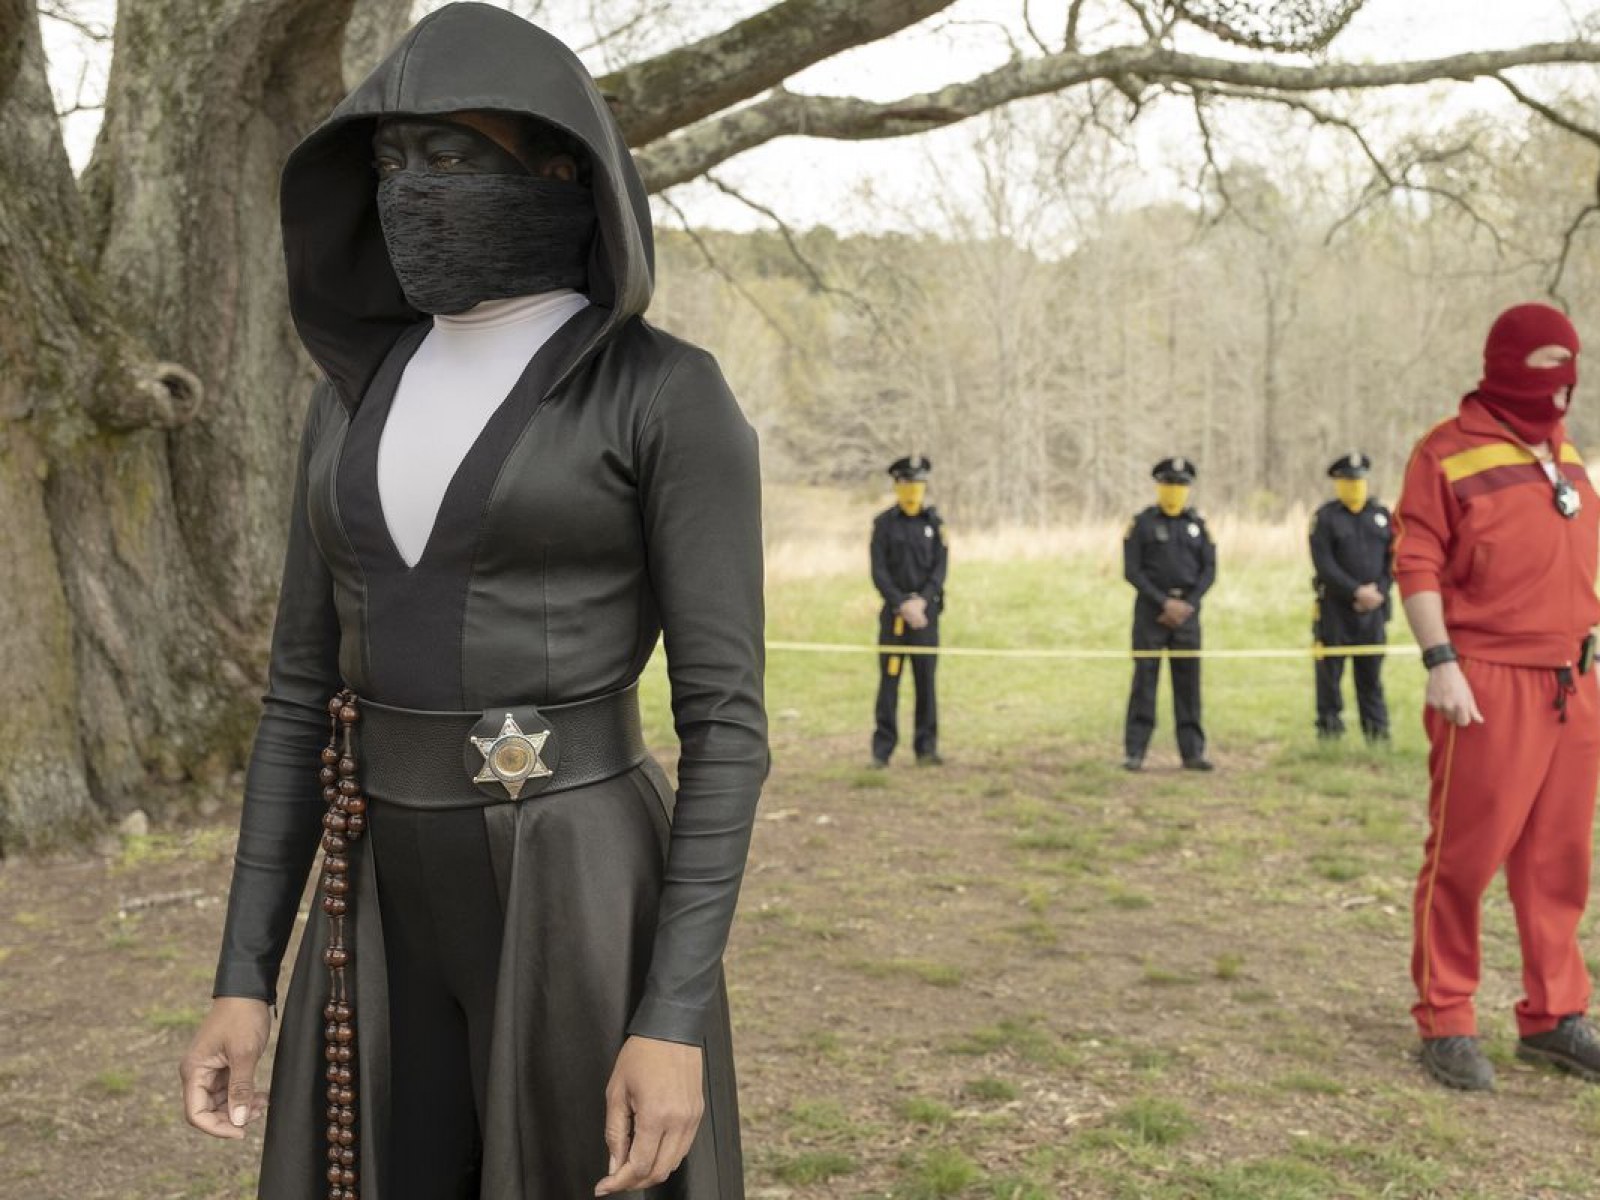 watchmen-season-2-release-date-cast-plot-trailer